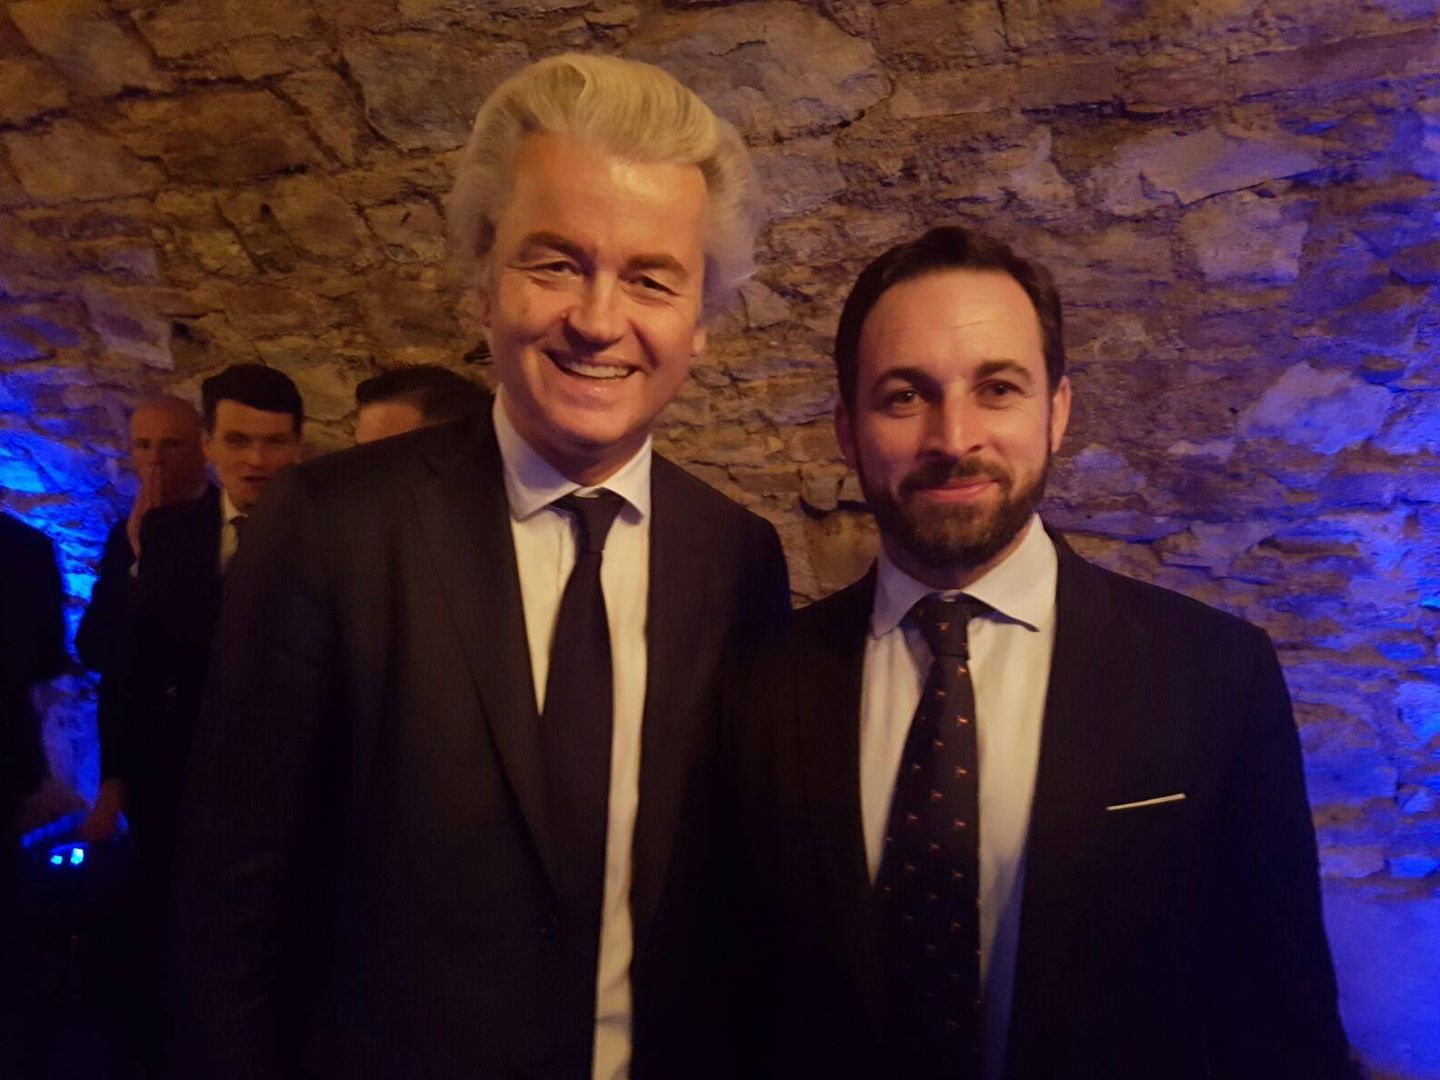 Abascal con Geert Wilders, el ultra derechista que logró quedar segundo en las elecciones de Holanda 